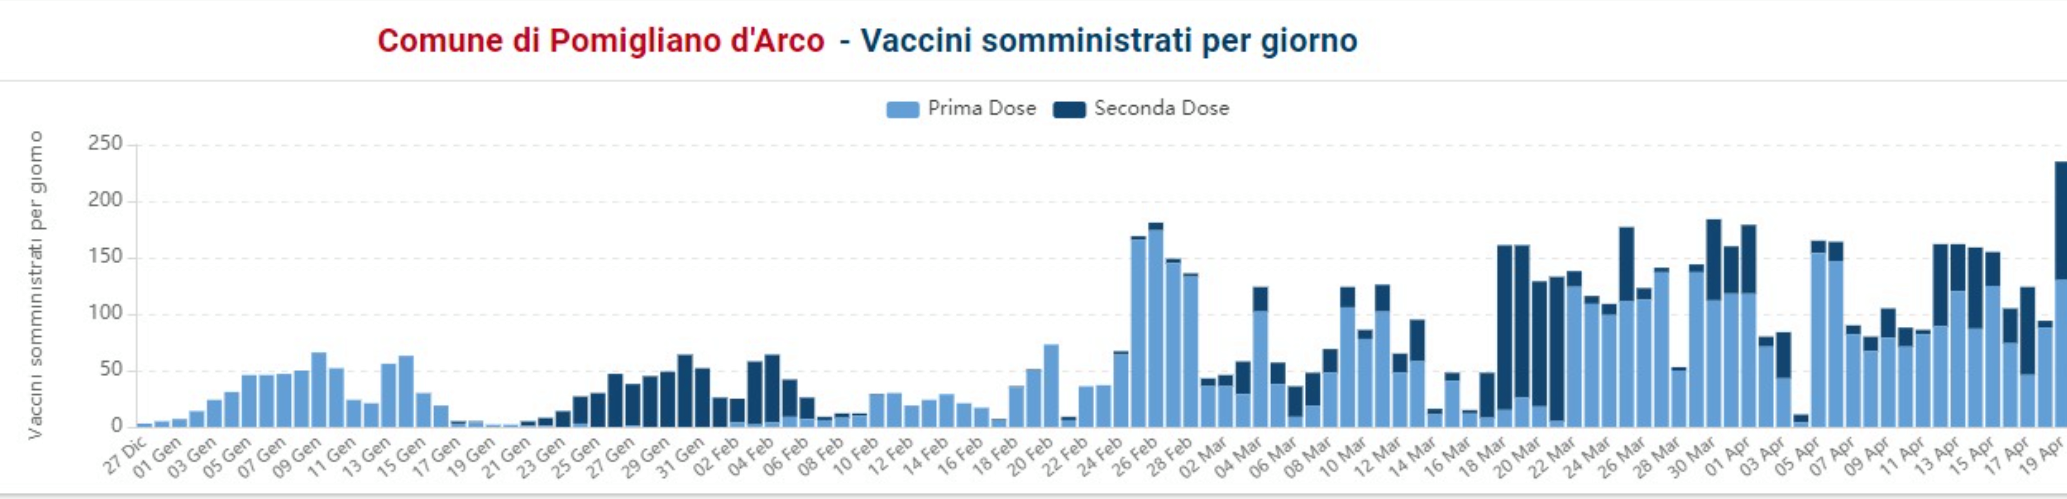 Pomigliano d'Arco: somministrate 7752 dosi di vaccino Covid-19